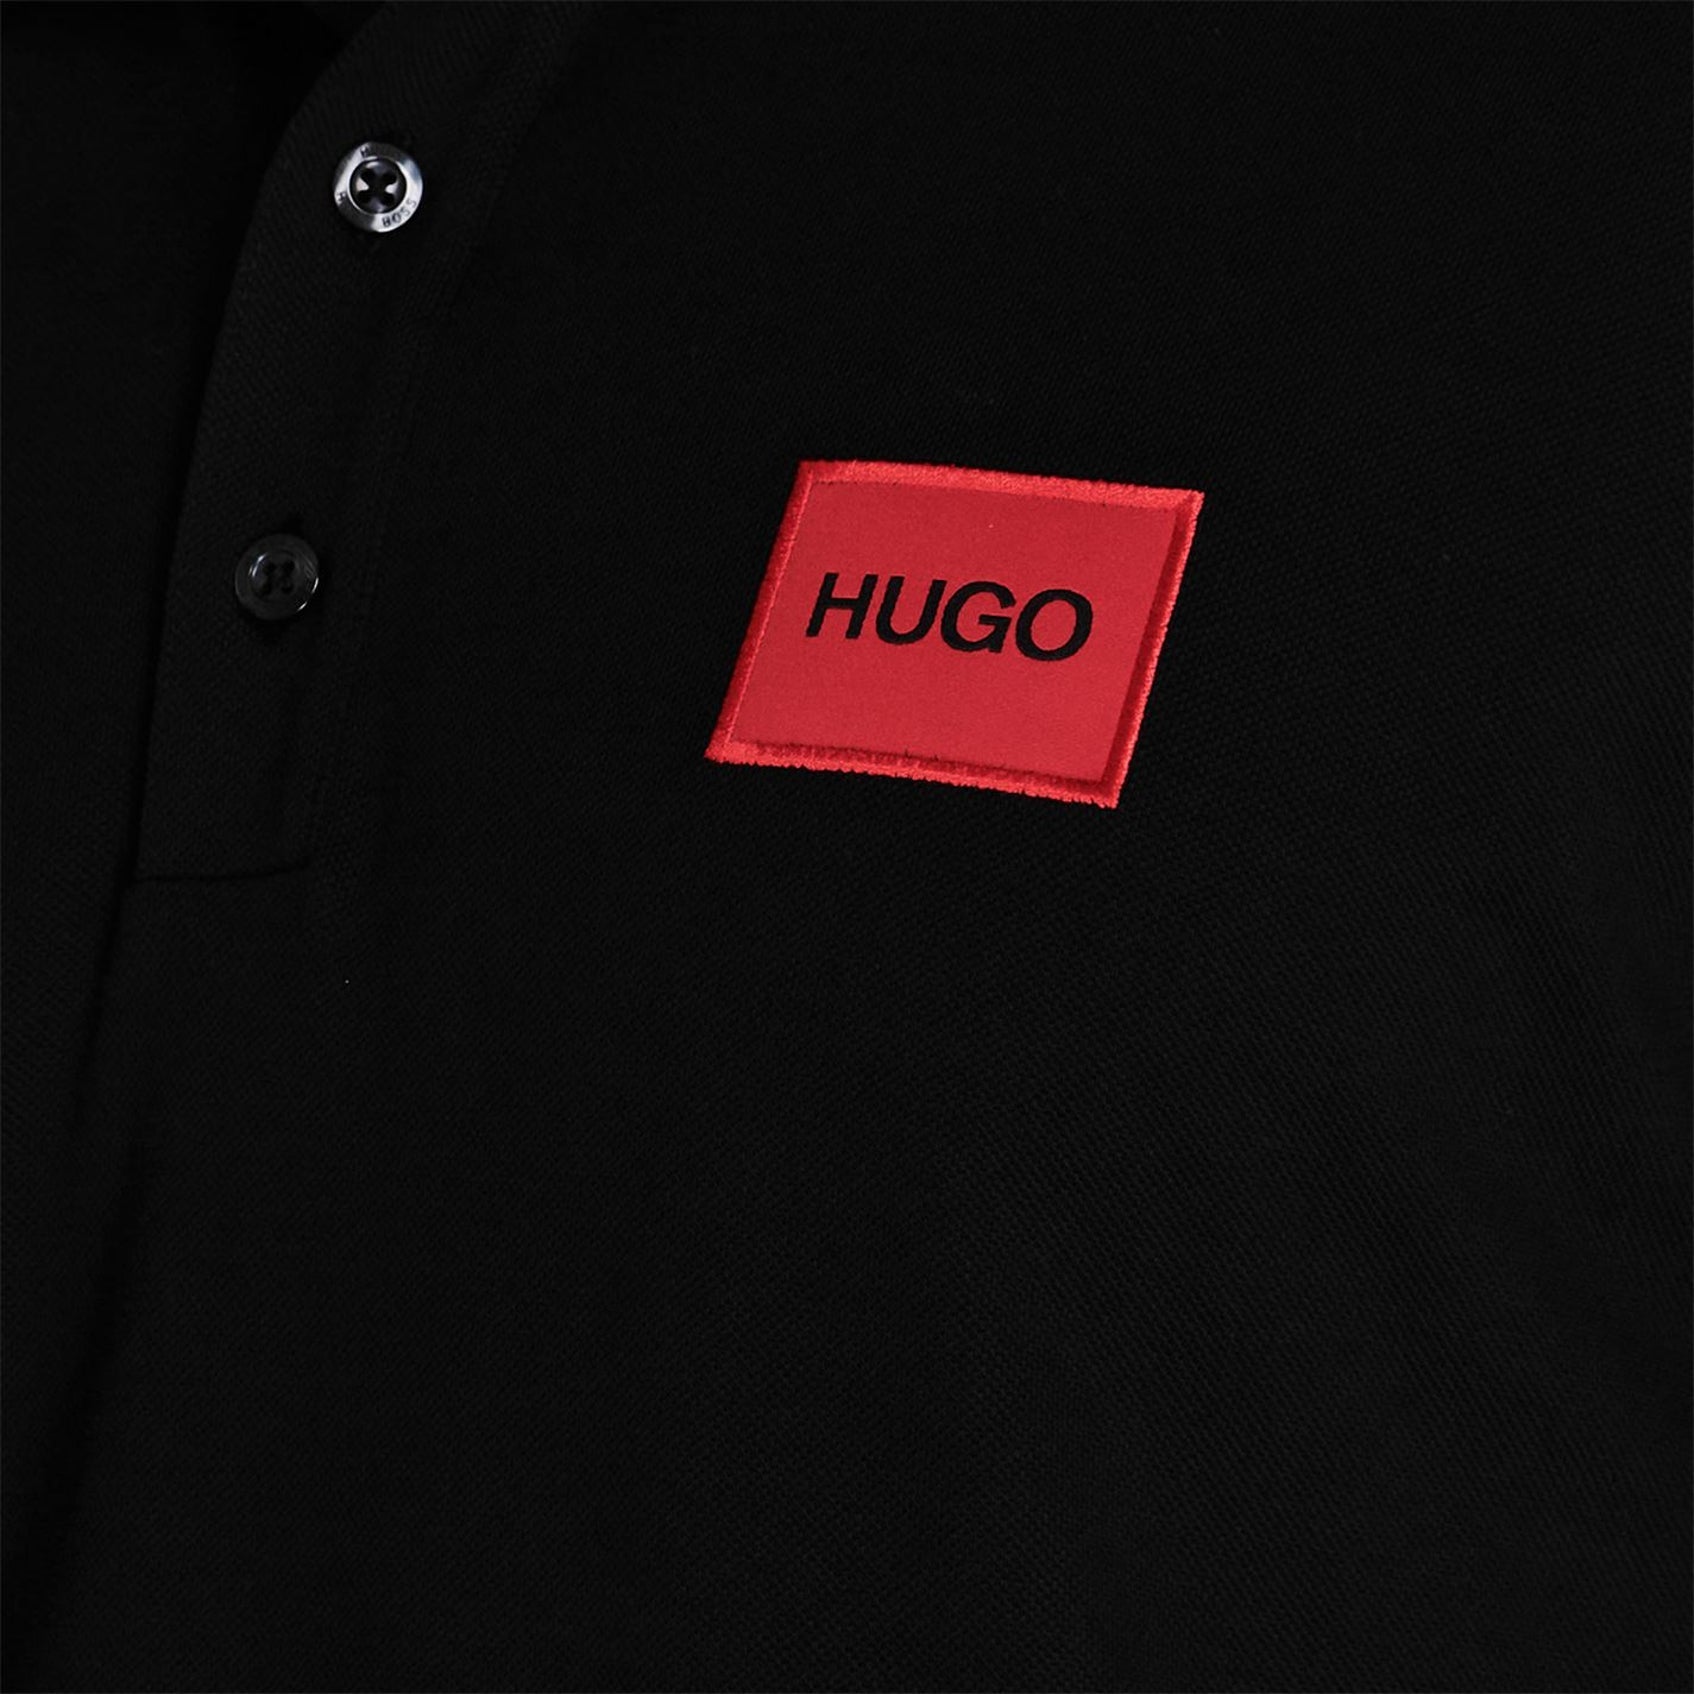 HUGO Dereso 232 Polo T Shirt - 001 Black/Red - Escape Menswear